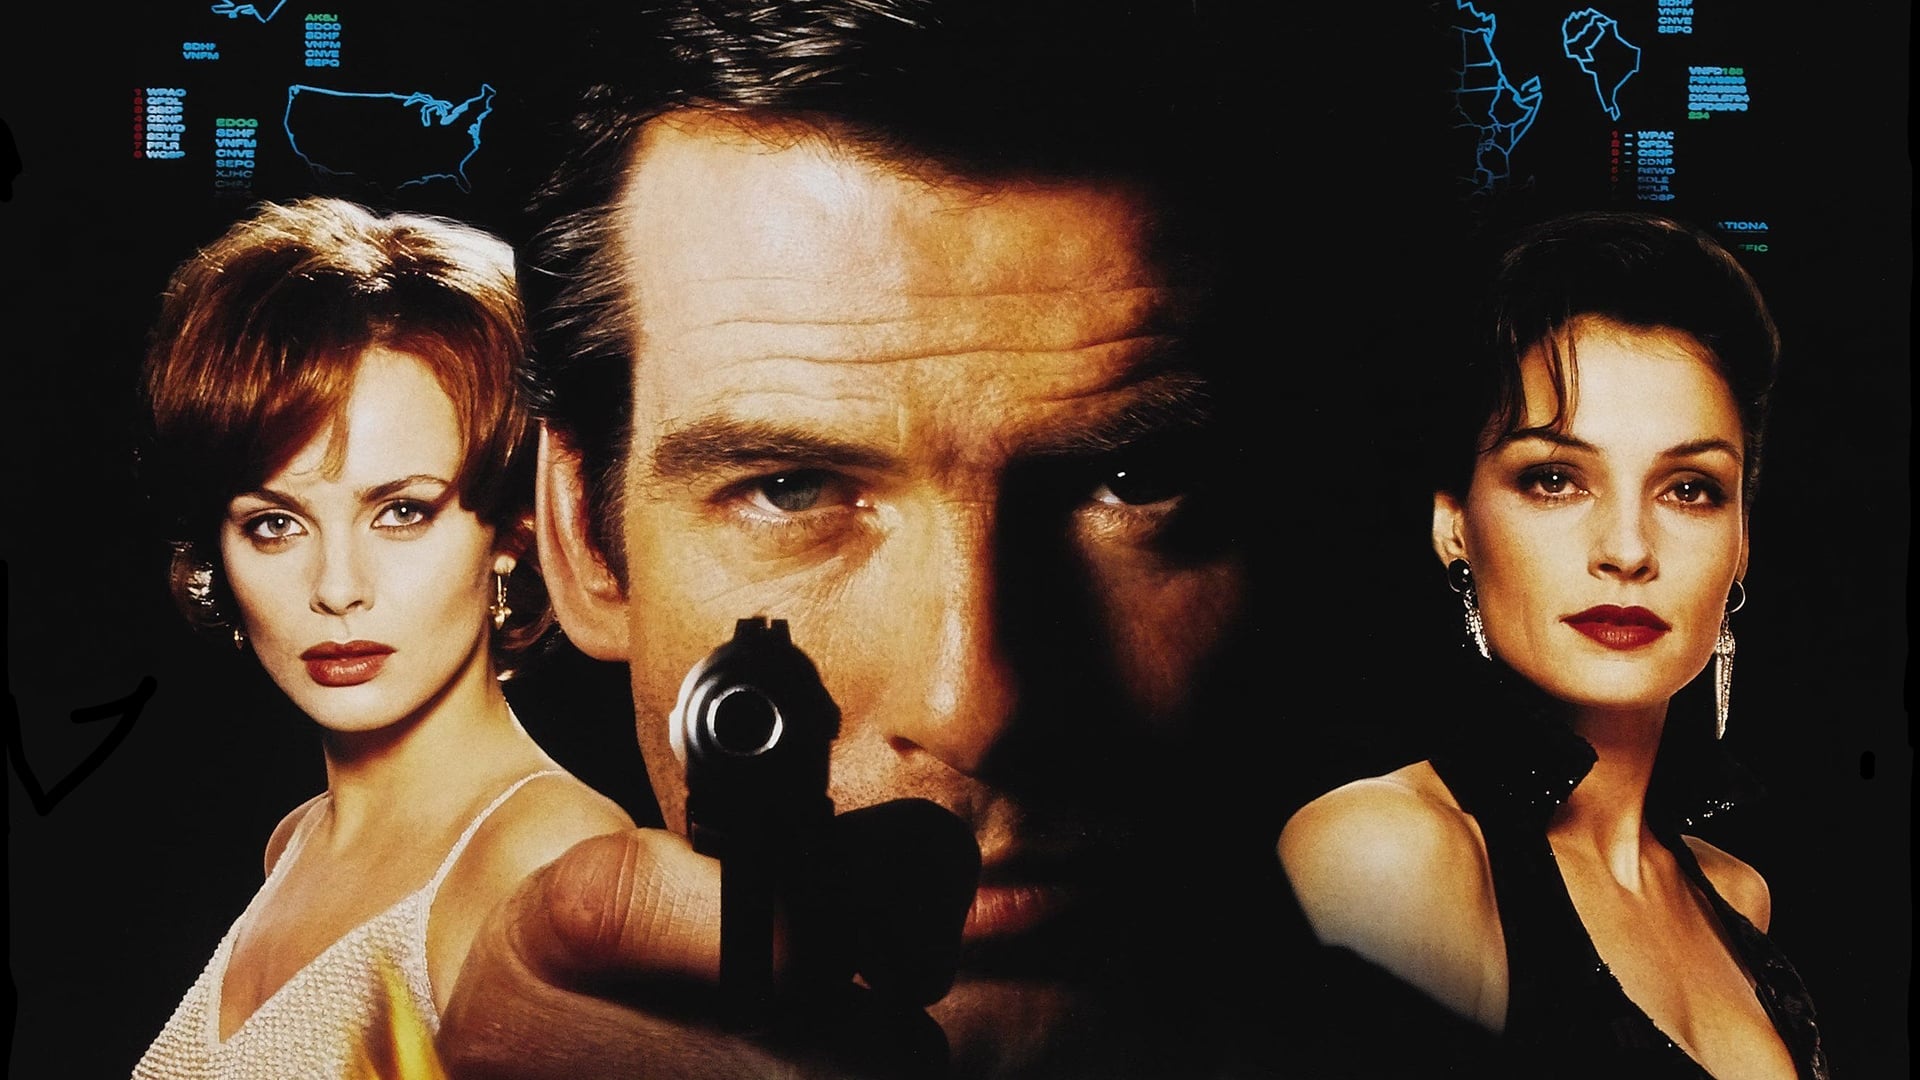 007: Золотой Глаз (1995)